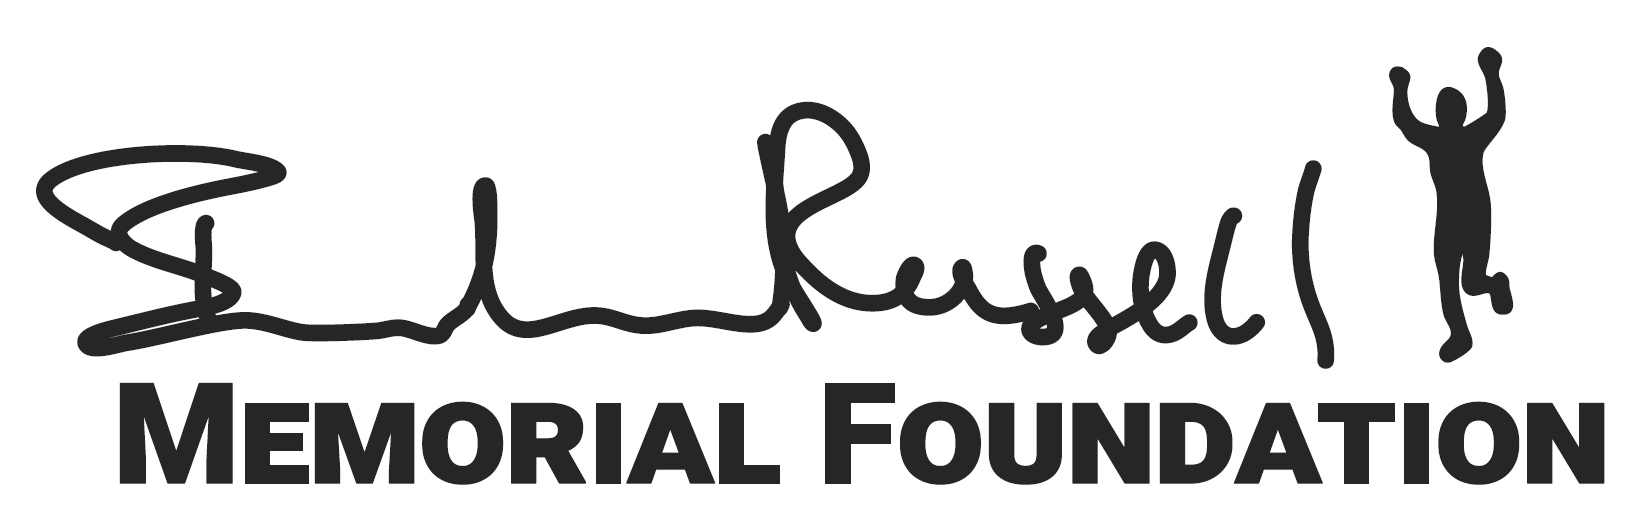 Brandon Russell Memorial Foundation